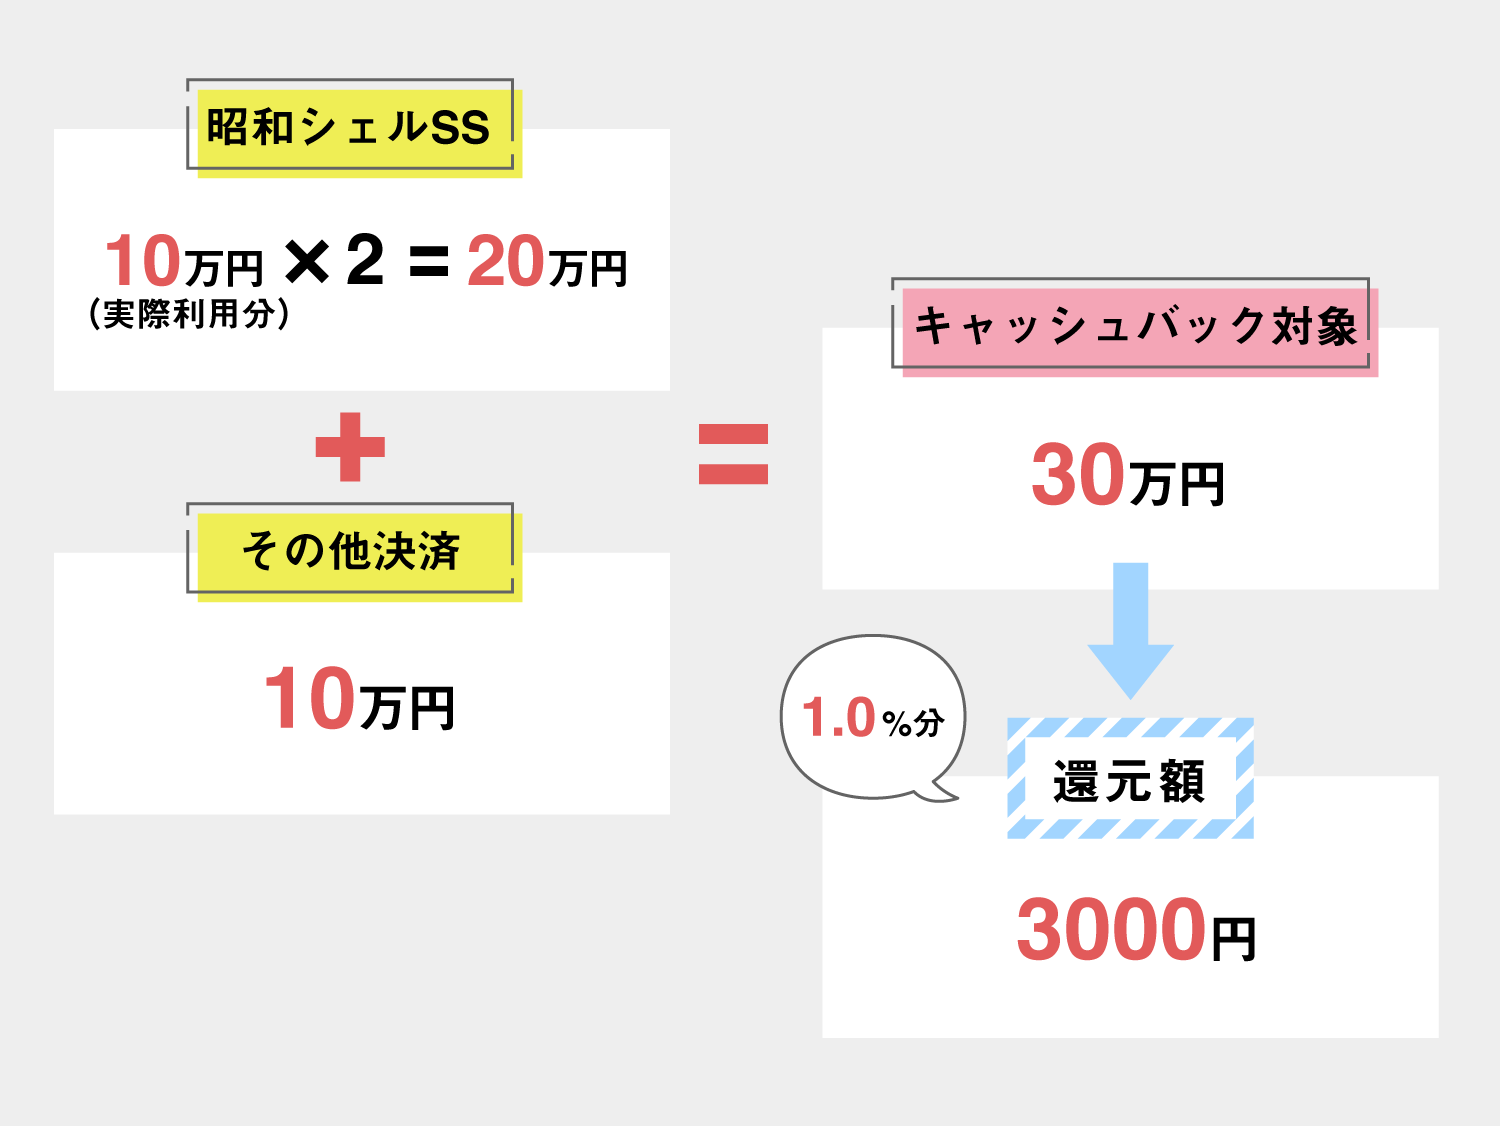 昭和シェルSSを利用した際のキャッシュバック計算例